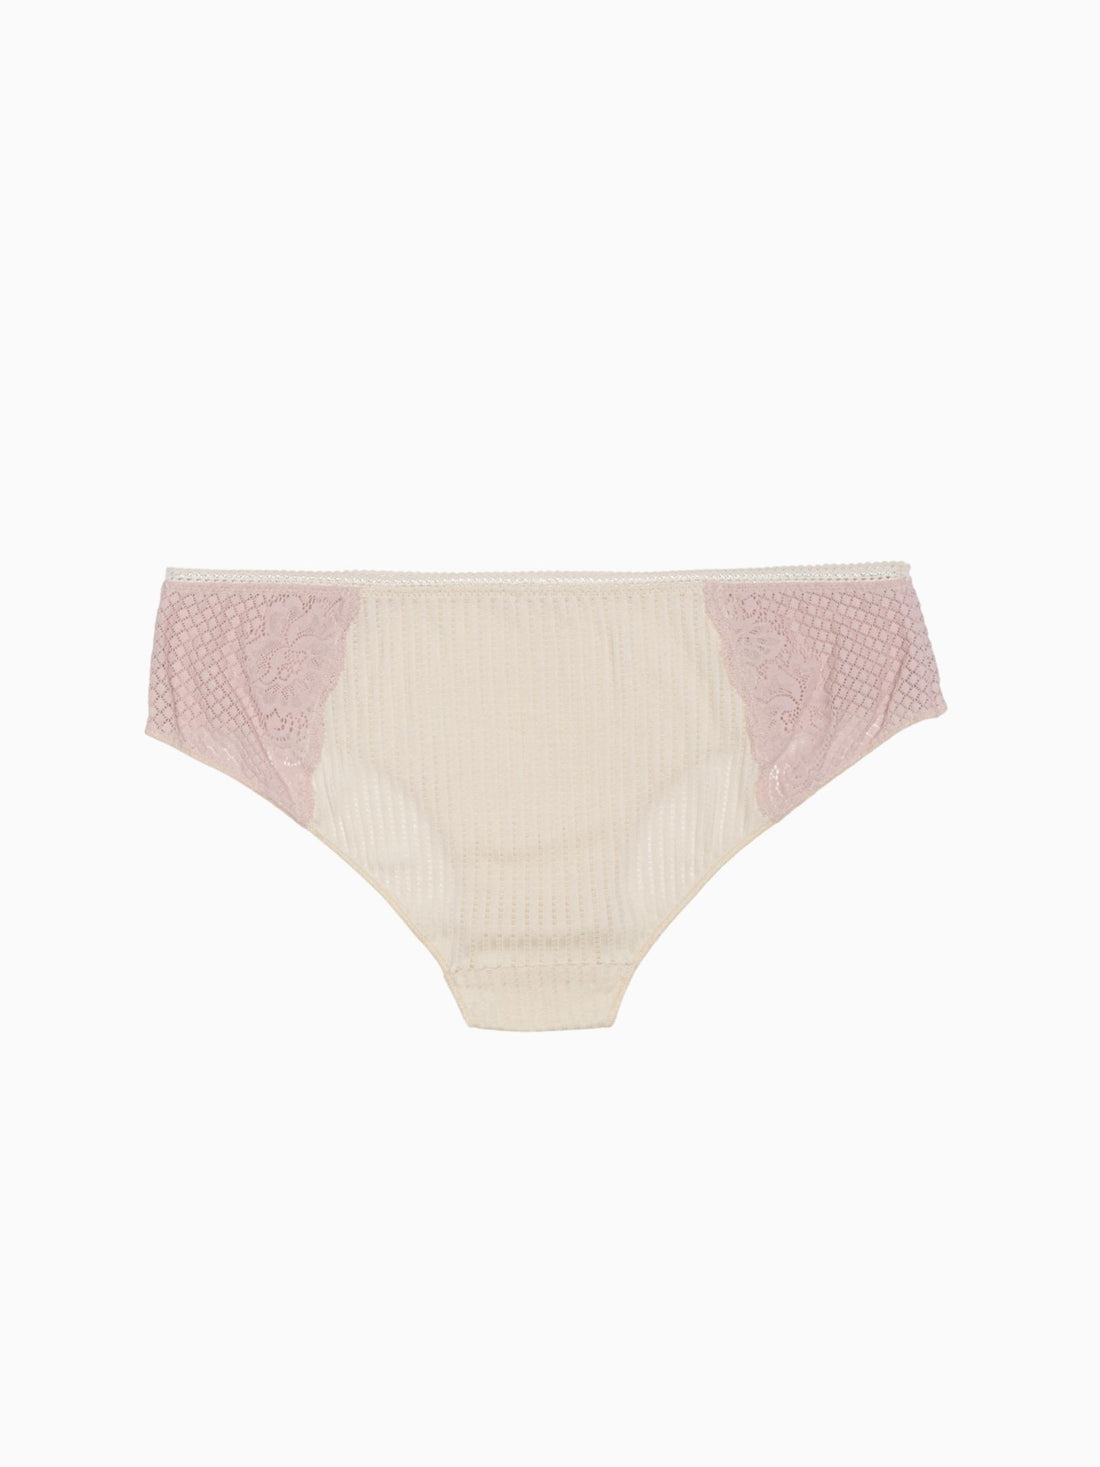 Understatement Underwear Naked Lace Highwaist Briefs (Nude/Pink) - 19.50 €  